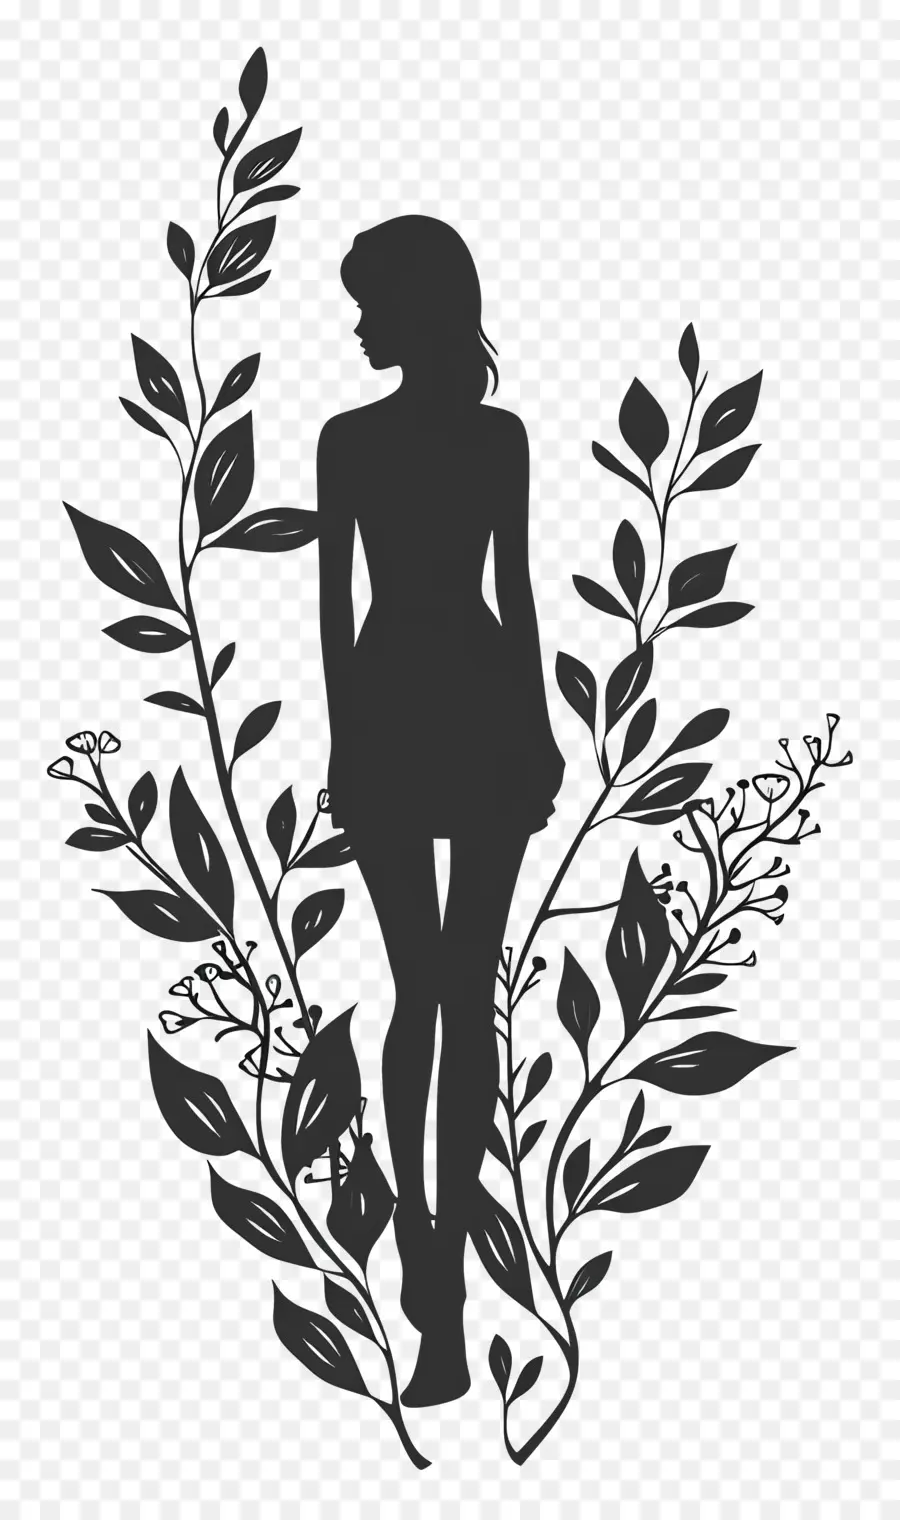 Mädchen Silhouette Frau Silhouette pflanzen schwarze und weiße Blumen - Silhouette von Frauen, die von Pflanzen umgeben sind